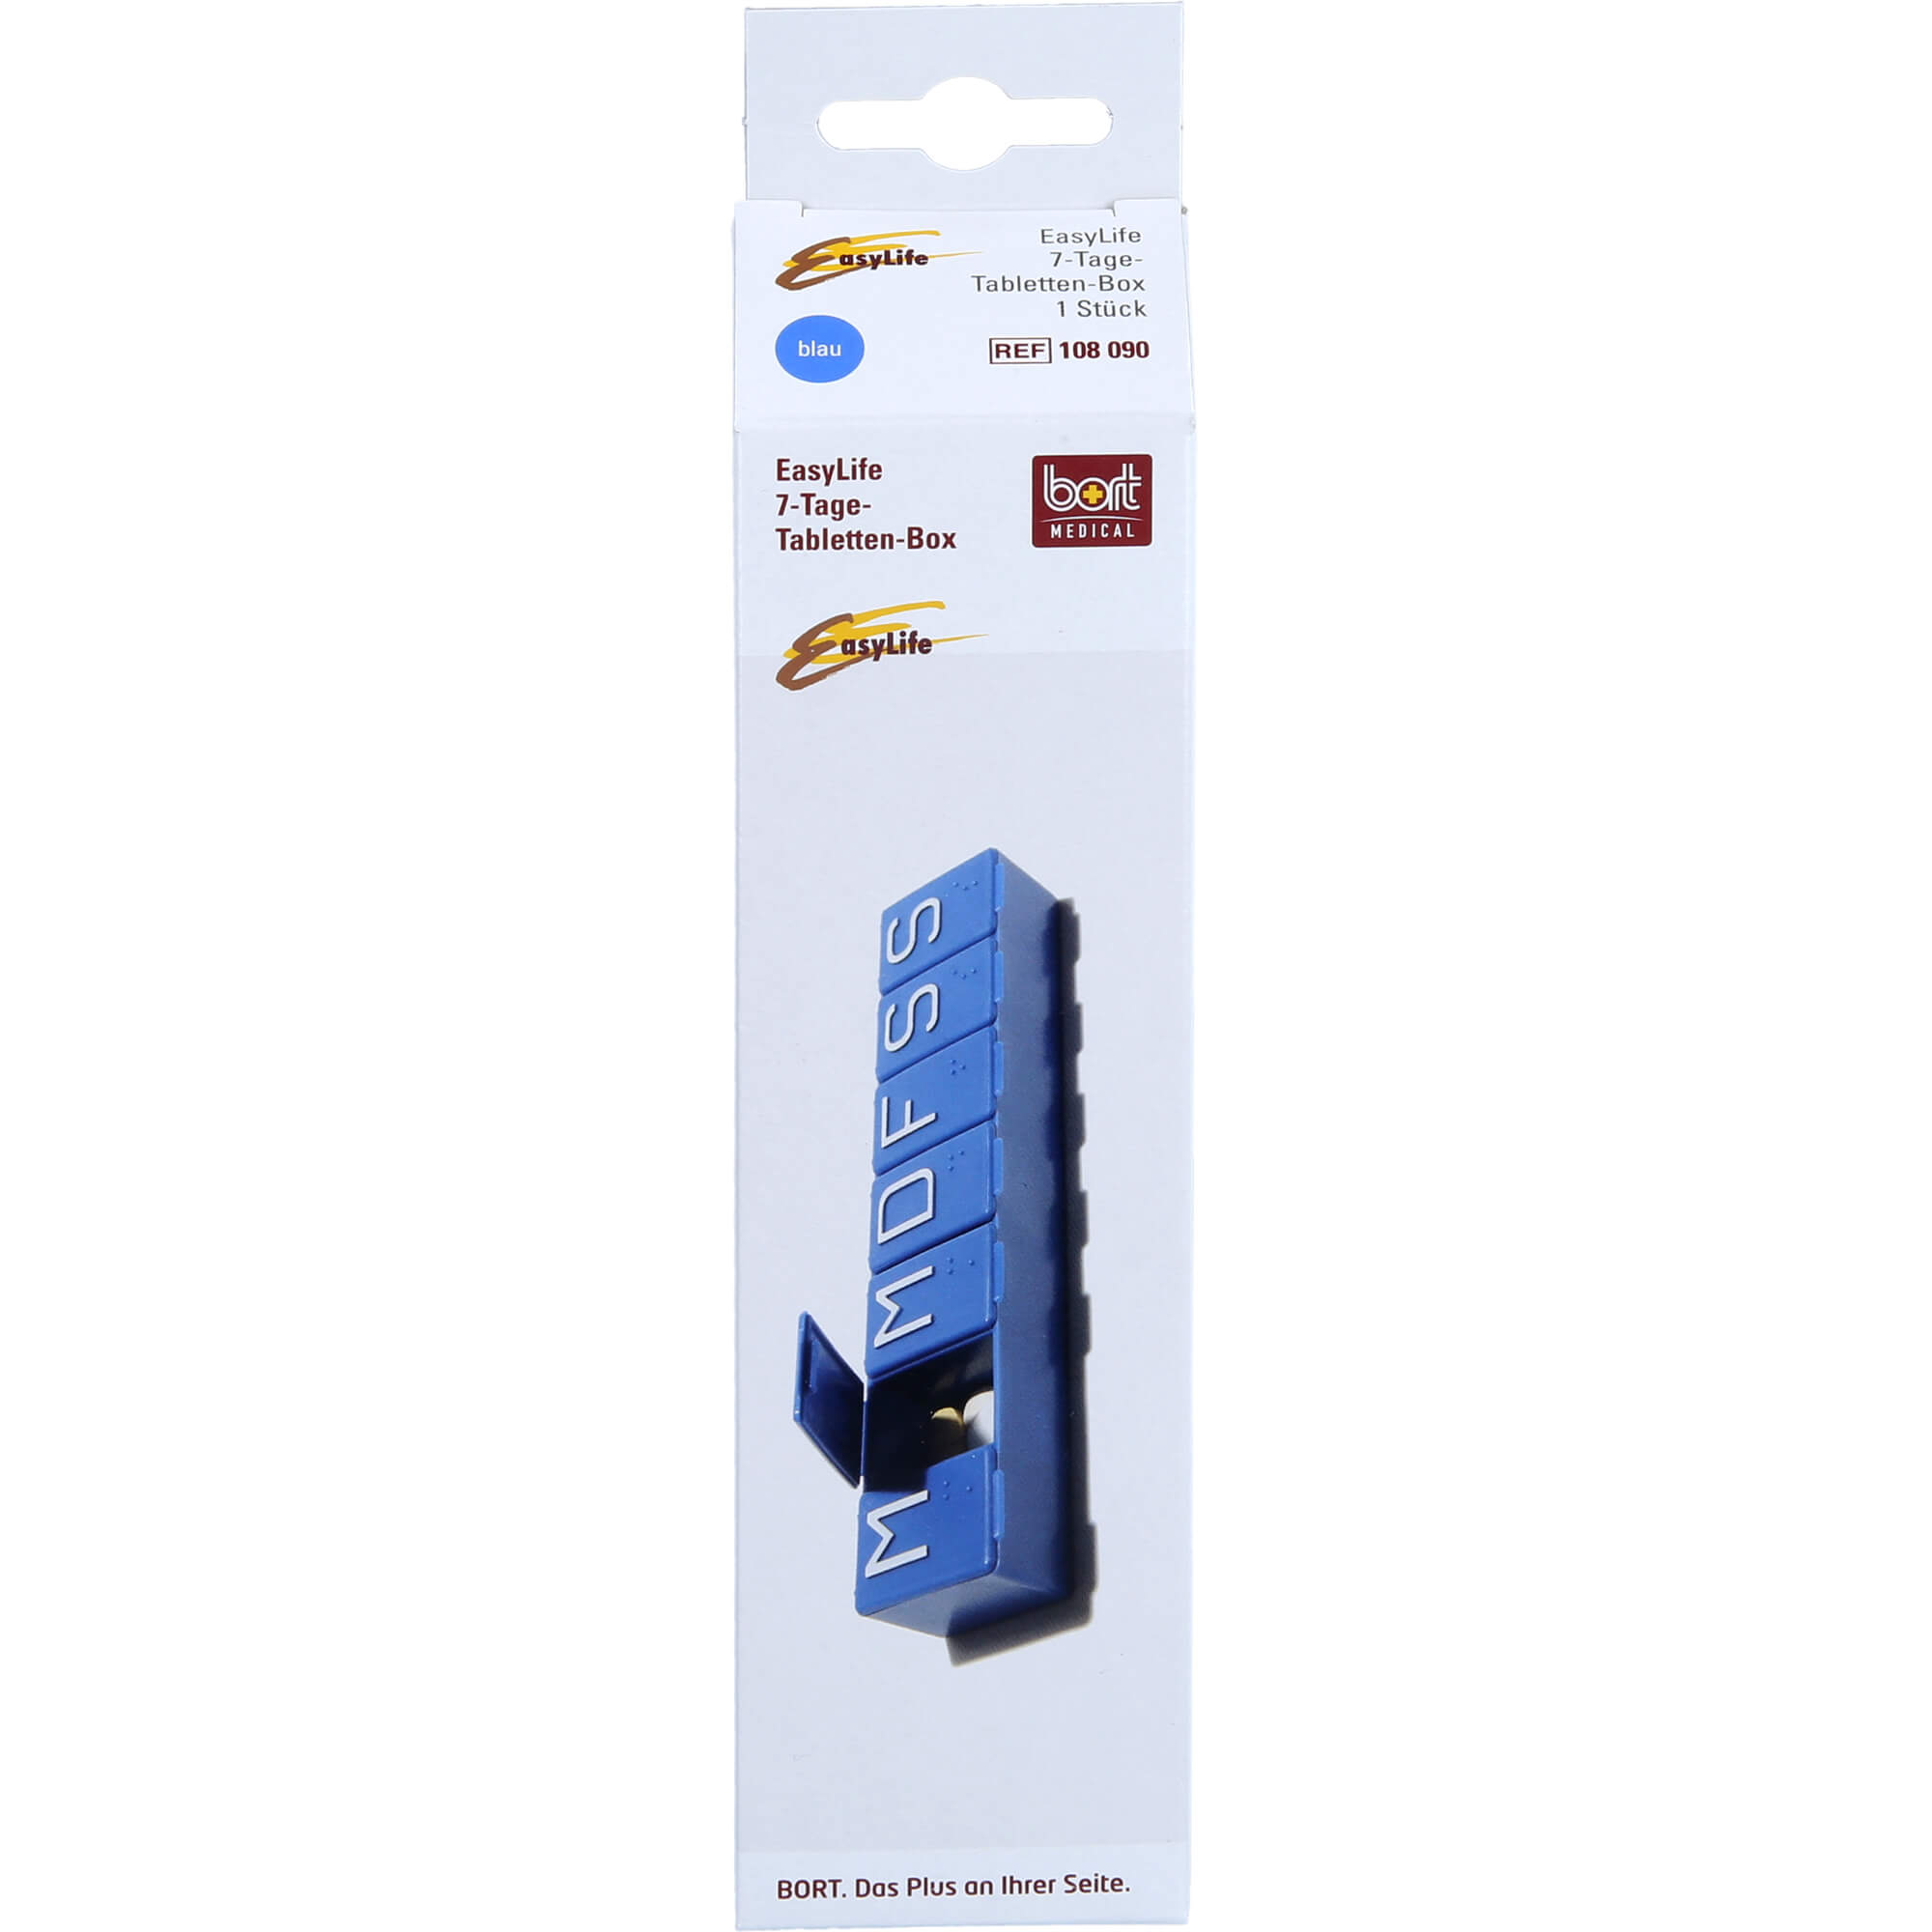 BORT EasyLife 7-Tage-Tablettenbox blau